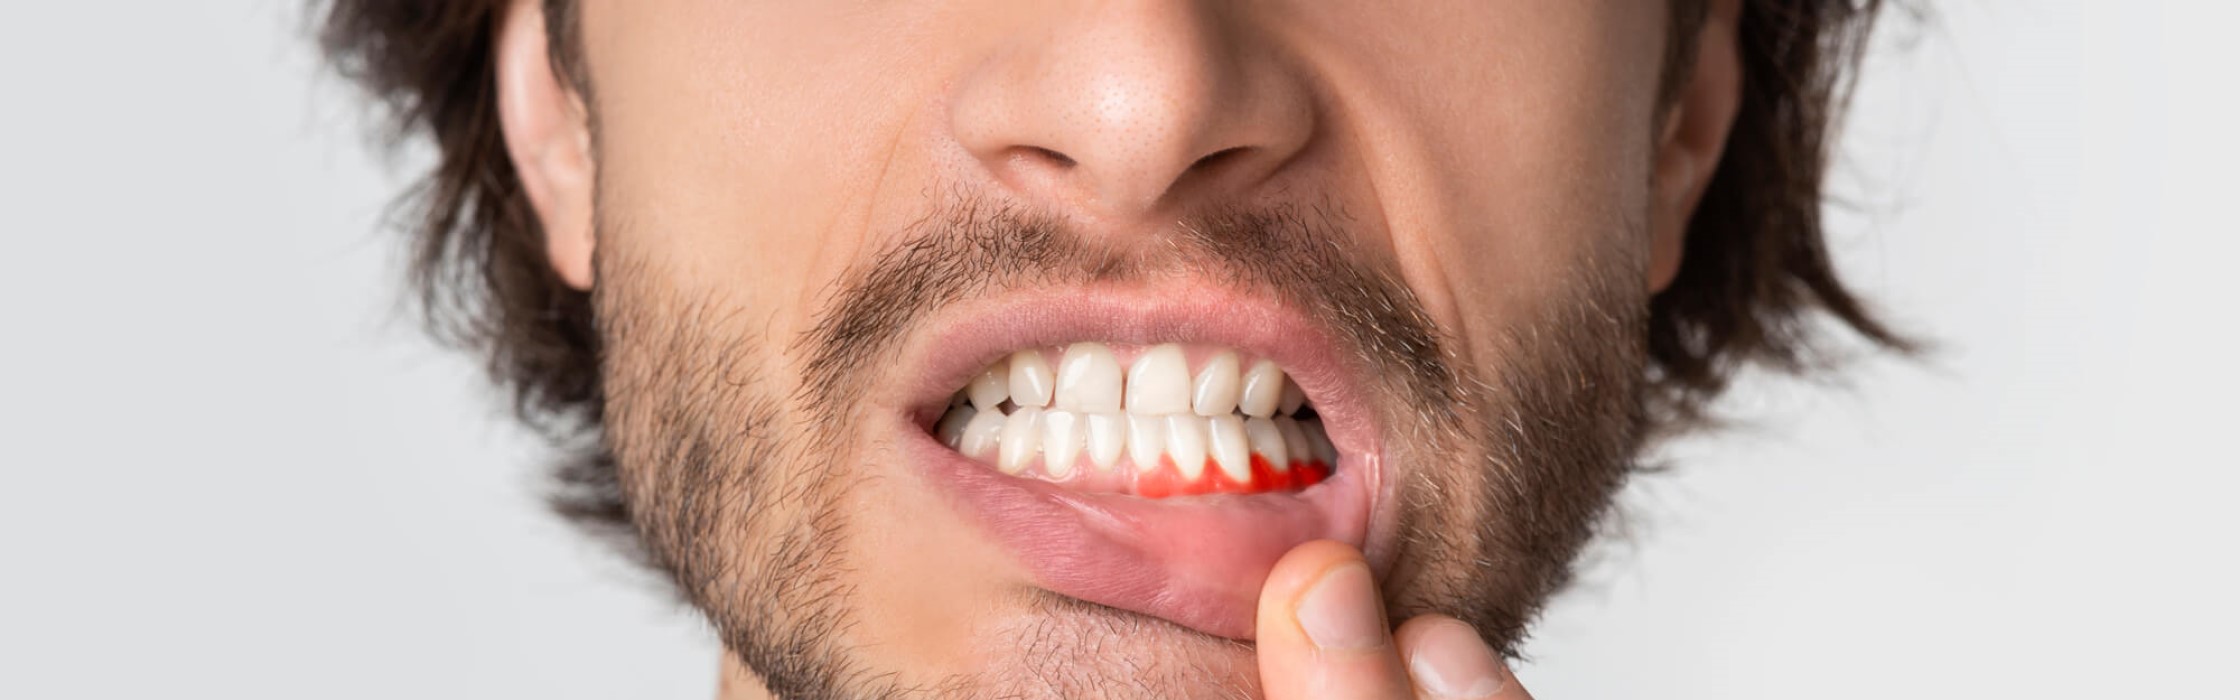 Zahnfleischrückgang: Ursachen, Symptome und Behandlung bei Zahnfleischschwund